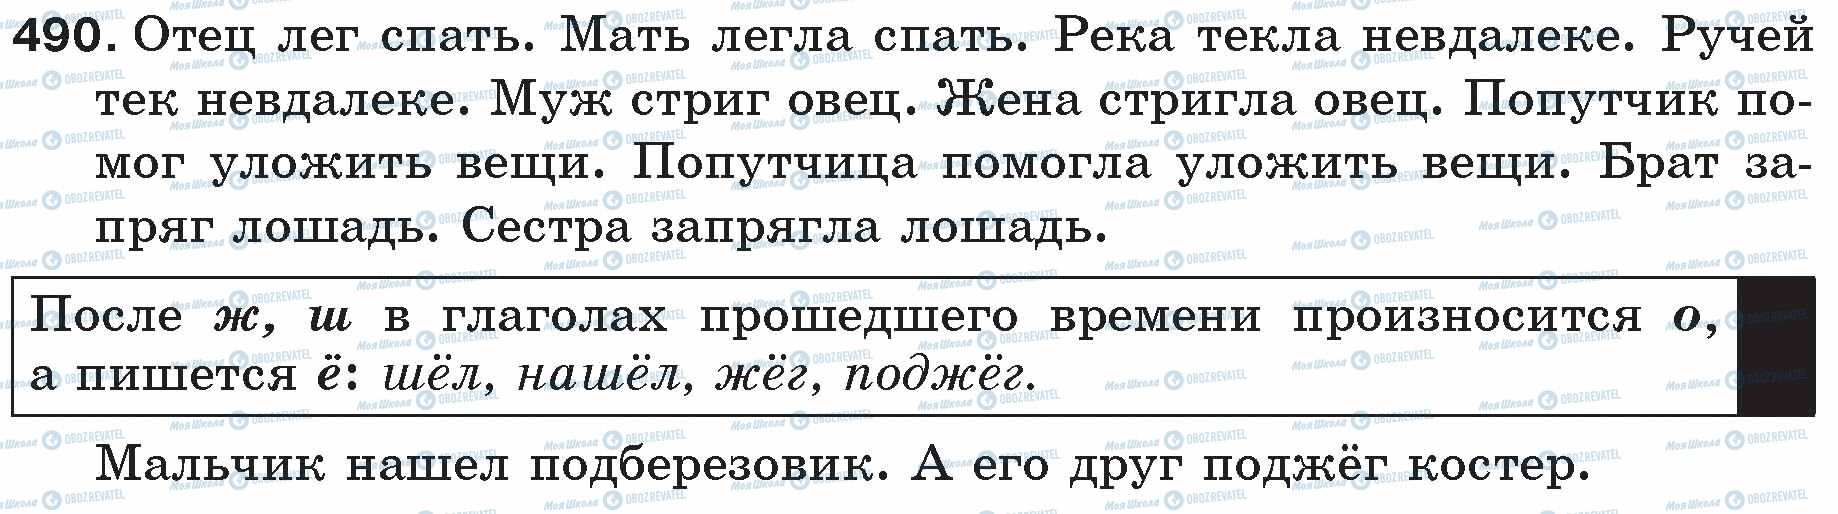 ГДЗ Русский язык 5 класс страница 490